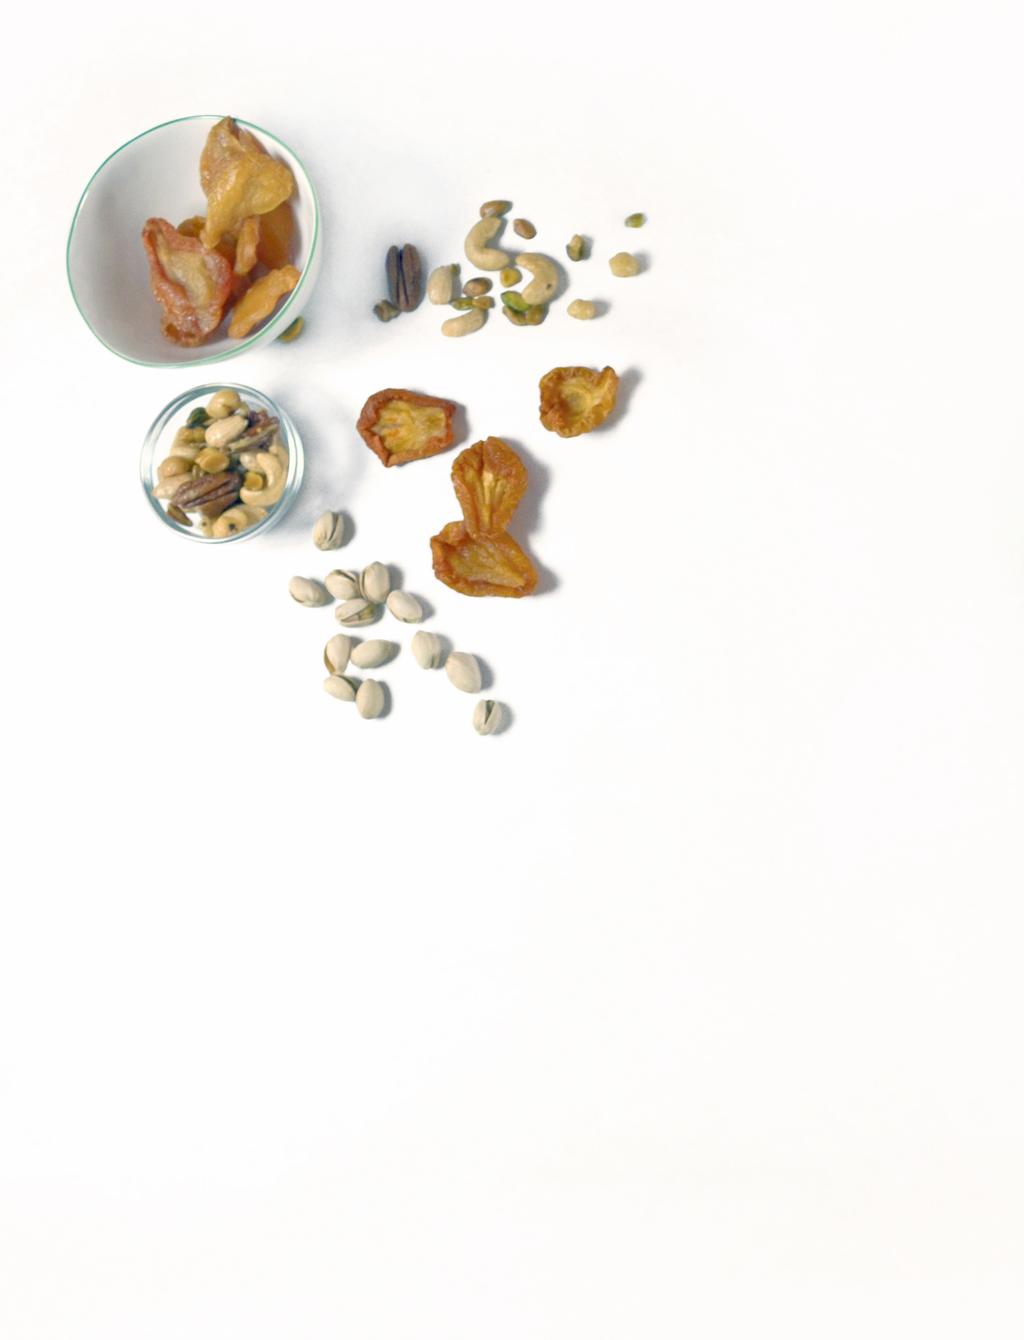 B. E. Dried Fruits & Nuts Candied Orange Peels #323070 12/6 oz Dark Raisins #323050 12/8 oz Dried Apple Rings #320890 12/4 oz Dried Apricots #320780 12/8 oz Dried Banana Chips #320880 12/4 oz Dried